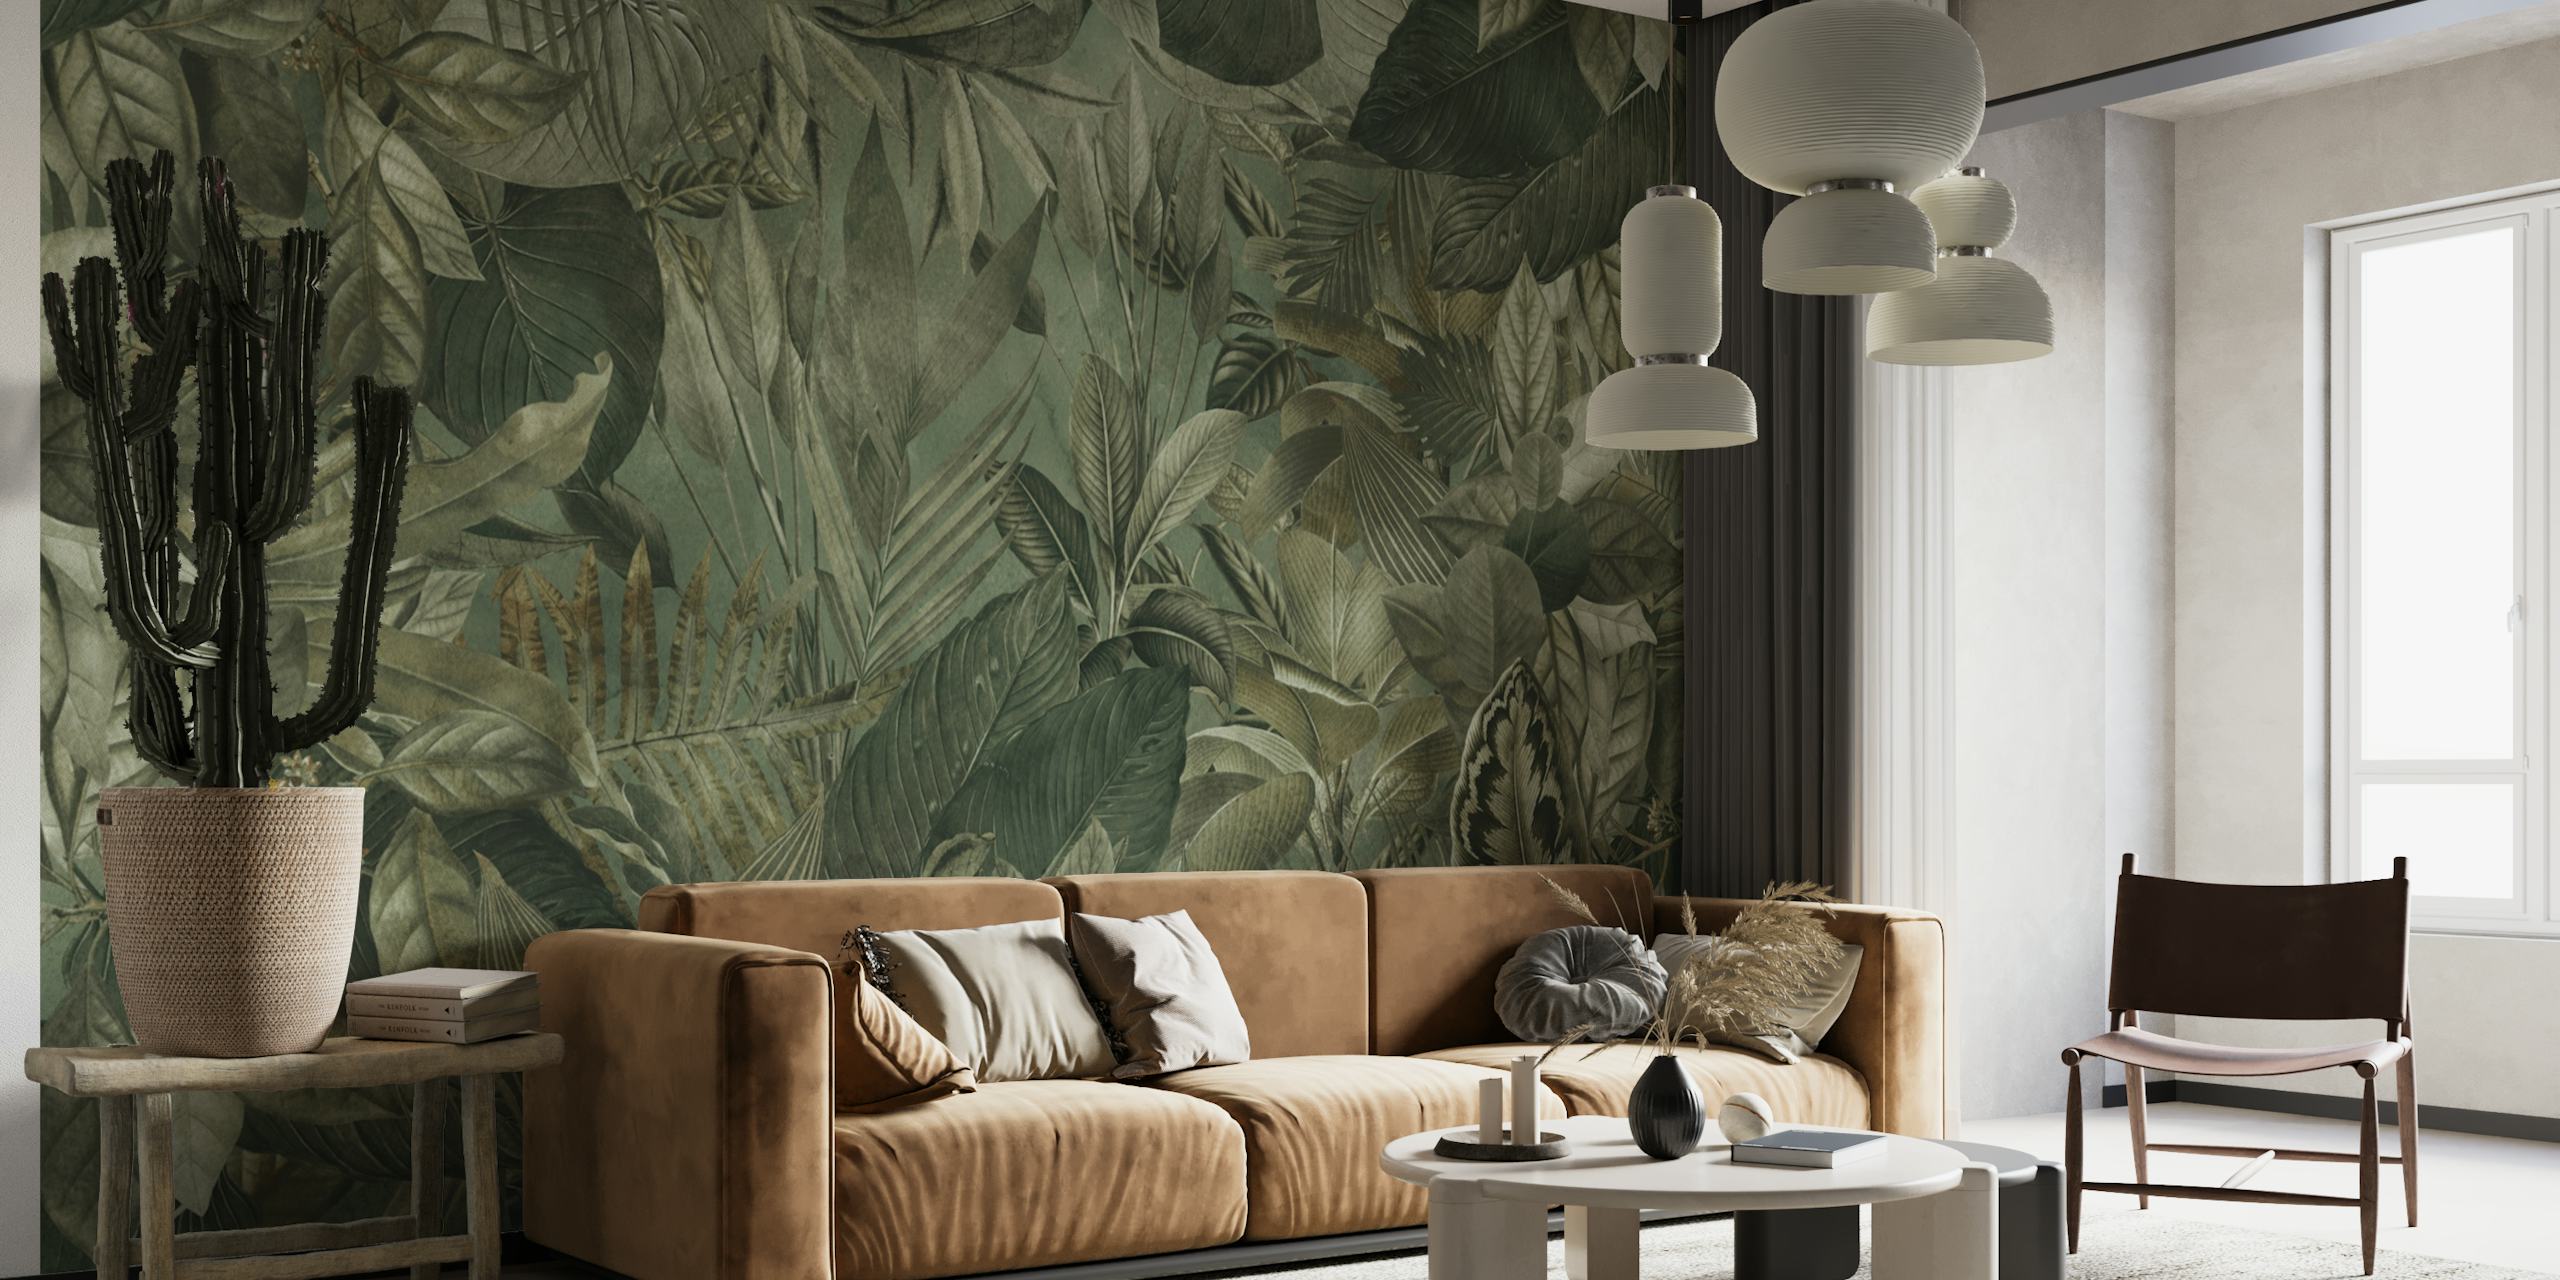 Vægmaleri med tropisk jungletema, der viser olivengrønt løv og botaniske elementer.